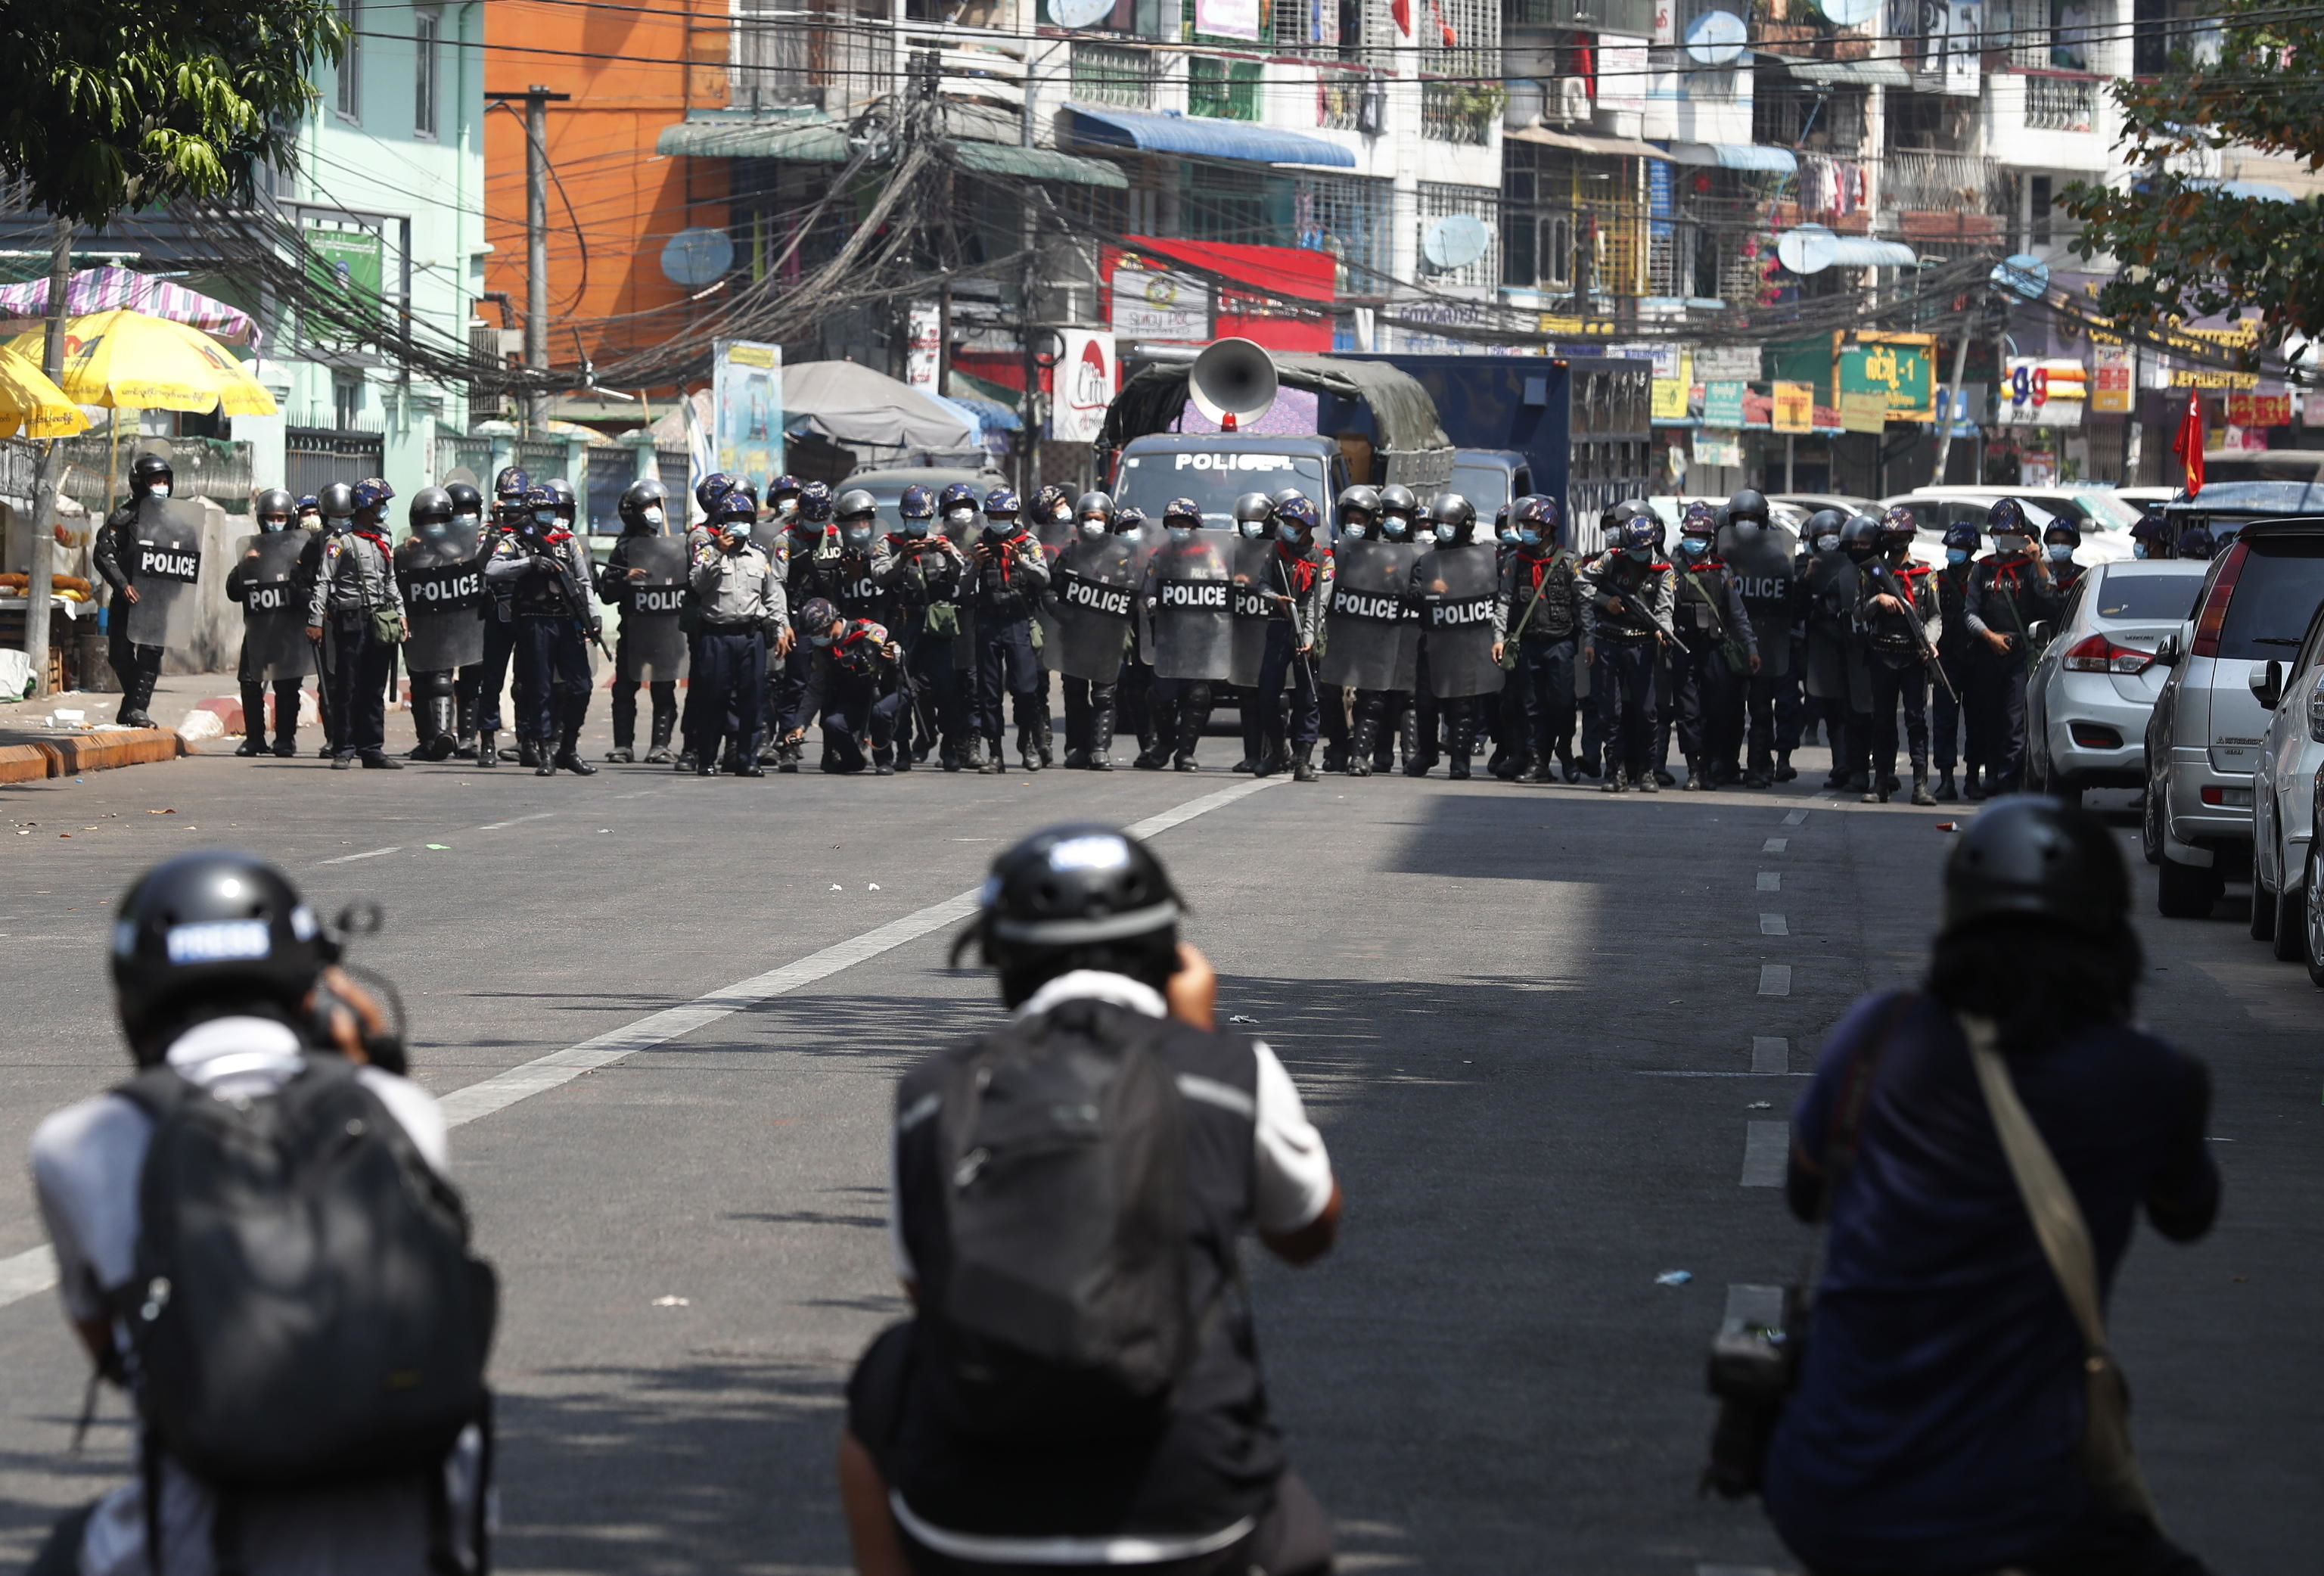 La polizia antisommossa avanza in una strada mentre i membri della stampa scattano foto durante una protesta contro il colpo di stato militare, a Yangon, Myanmar, 26 febbraio 2021.